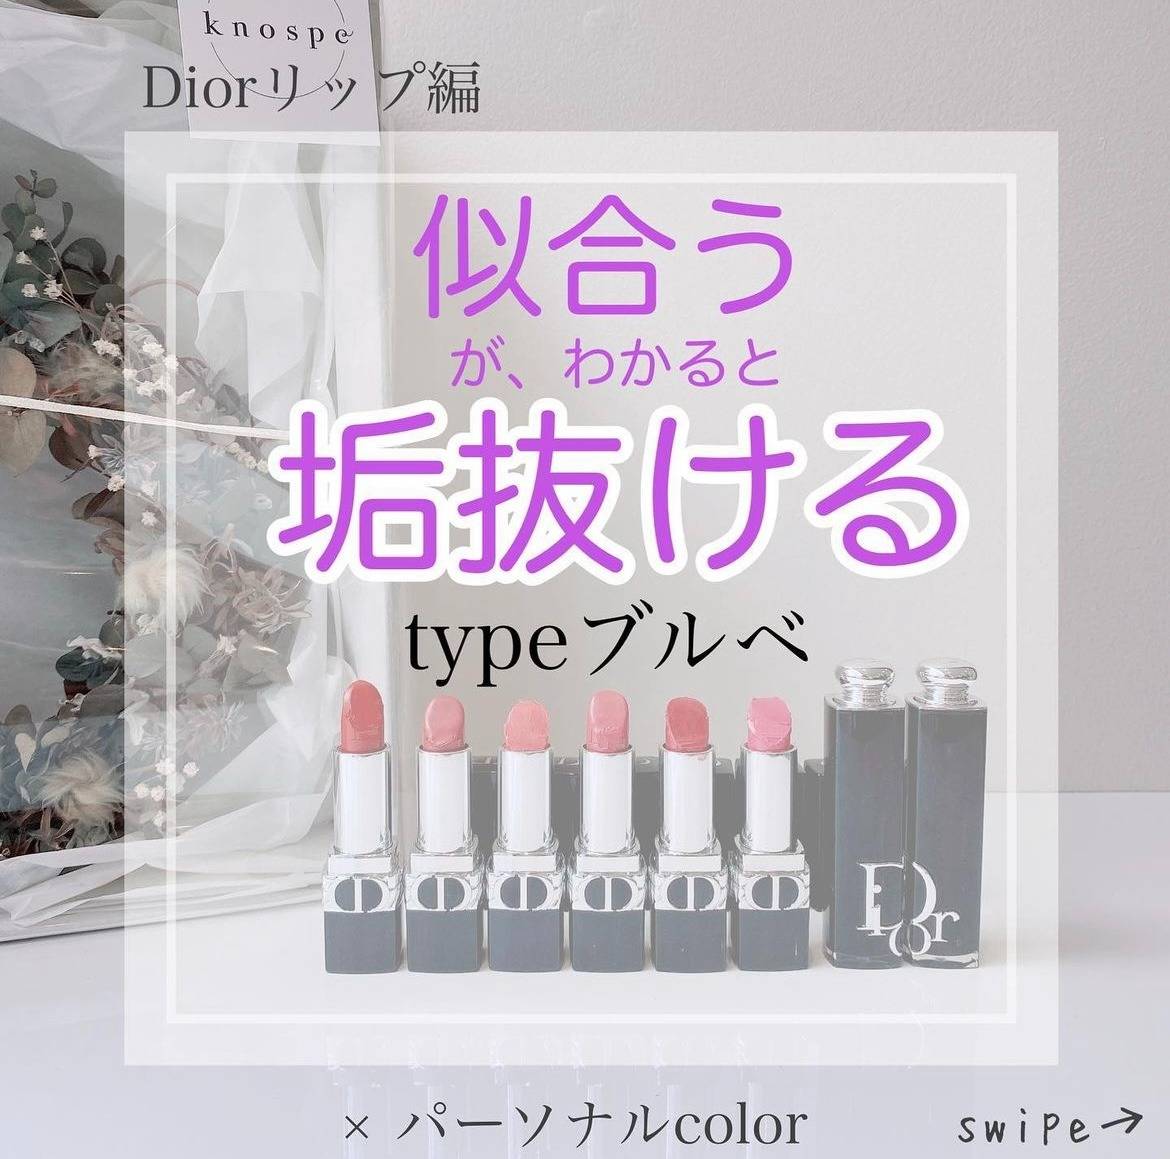 「垢抜け」リップ〜Dior編〜forブルベ